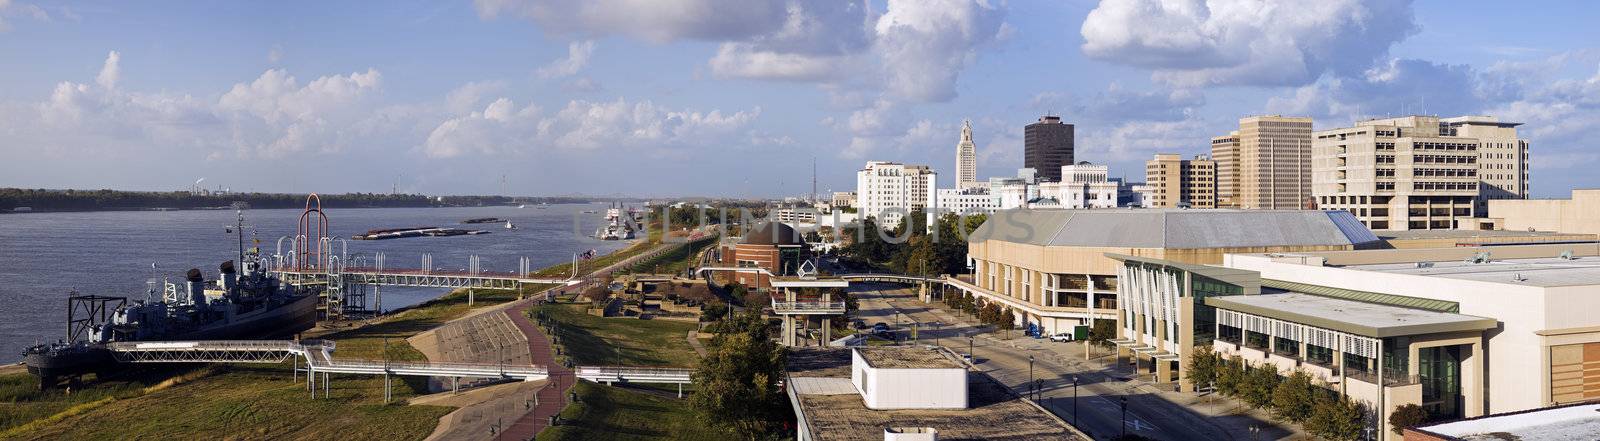 Baton Rouge Panorama by benkrut